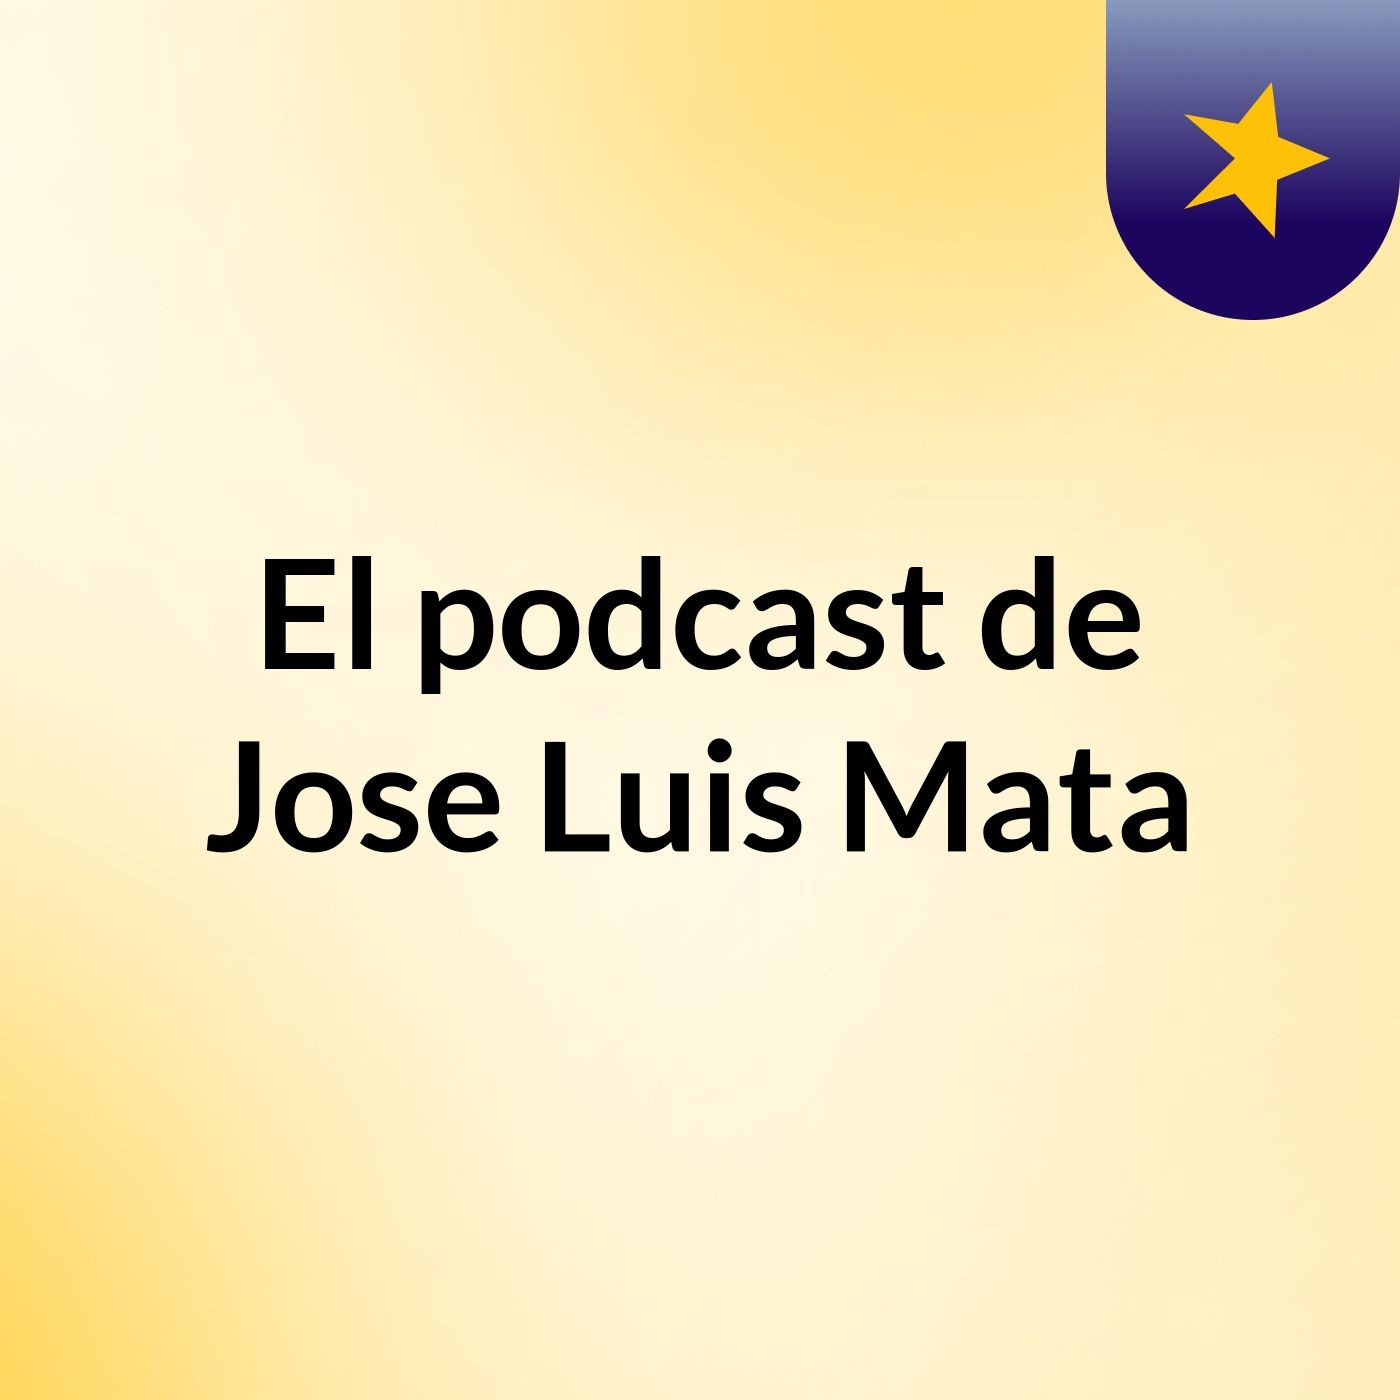 El podcast de Jose Luis Mata